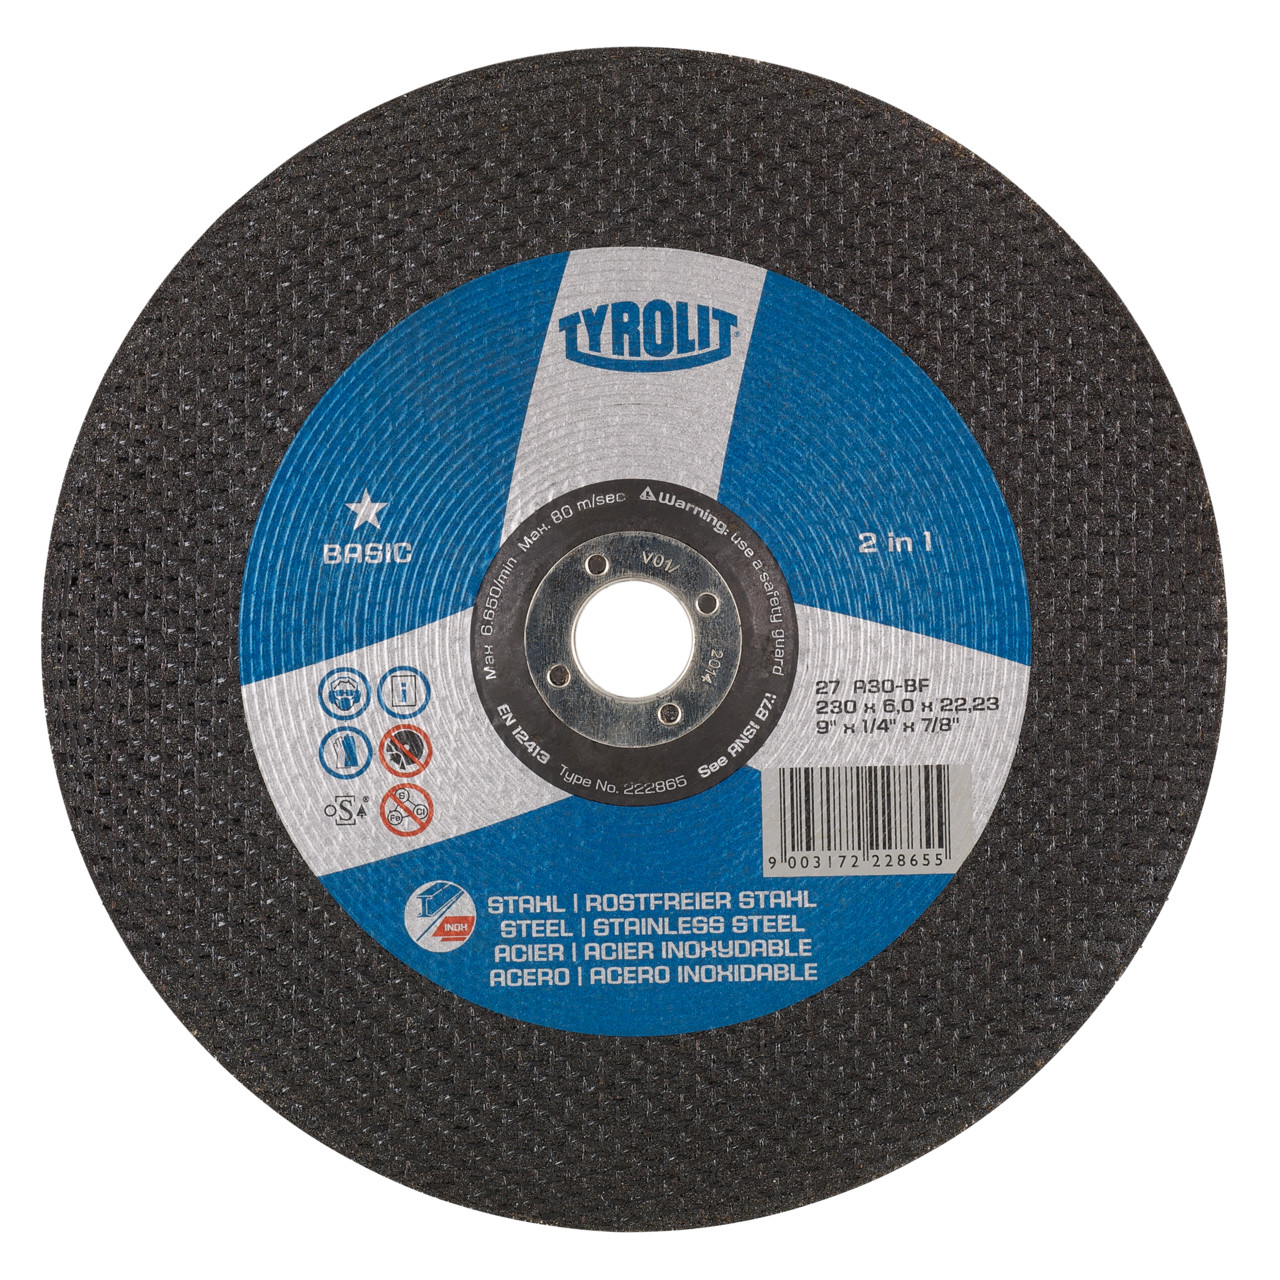 TYROLIT disco de desbaste DxUxH 230x4.3x22.23 2en1 para acero y acero inoxidable, forma: 27 - versión offset, Art. 34257206